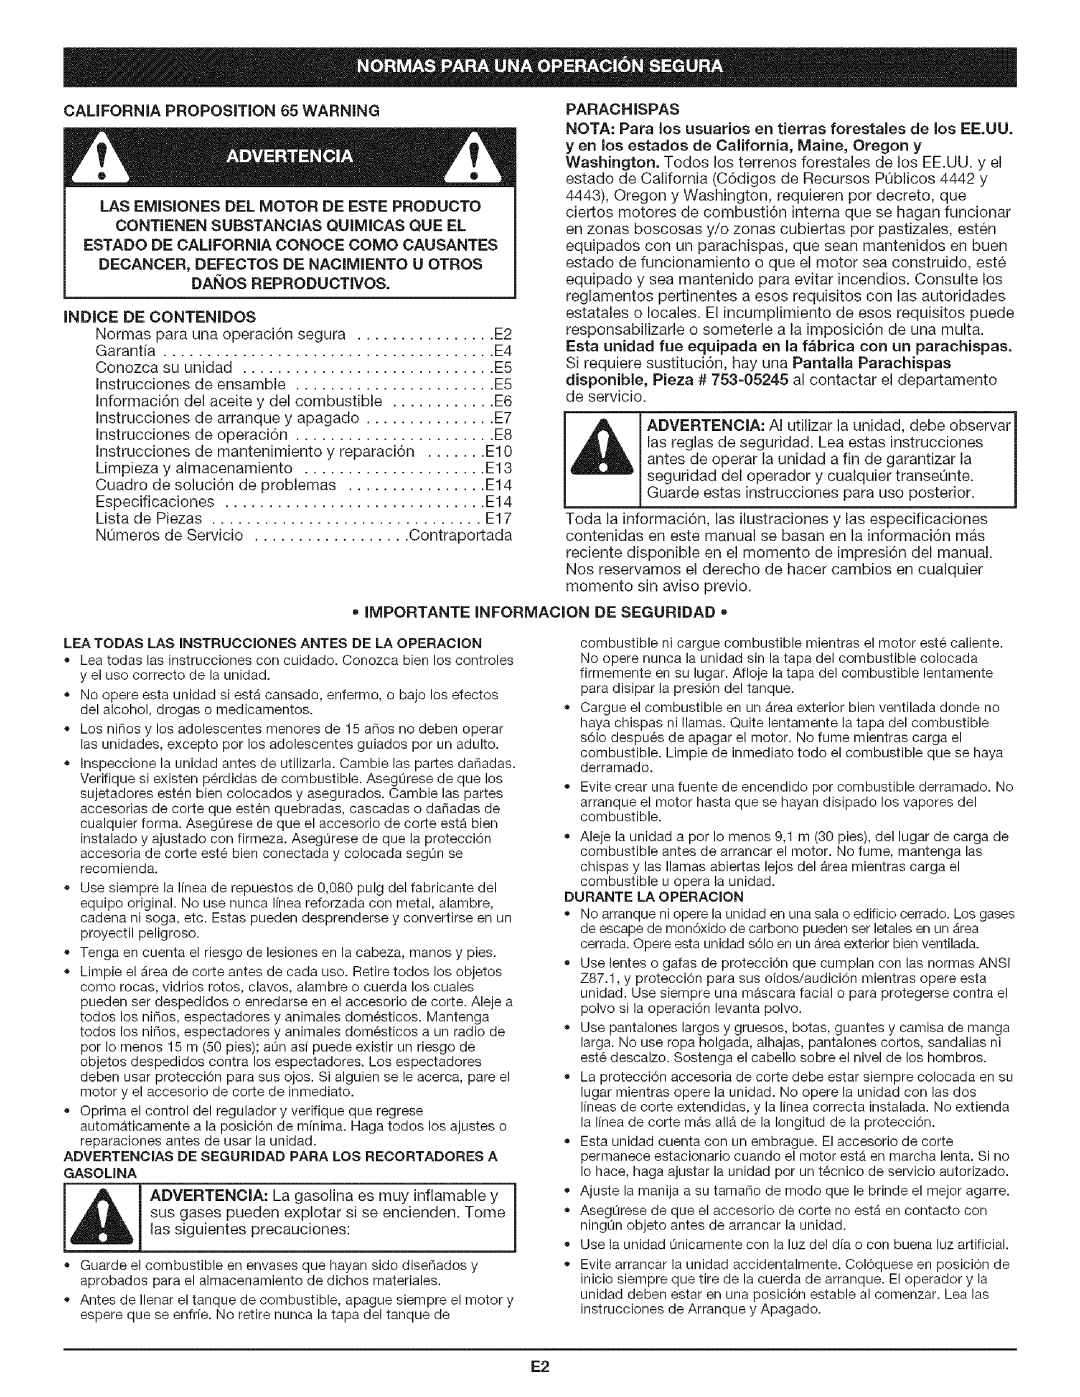 Craftsman 316.79194 manual Indice De Contenidos, Parachispas, Importante Informacion De Seguridad 